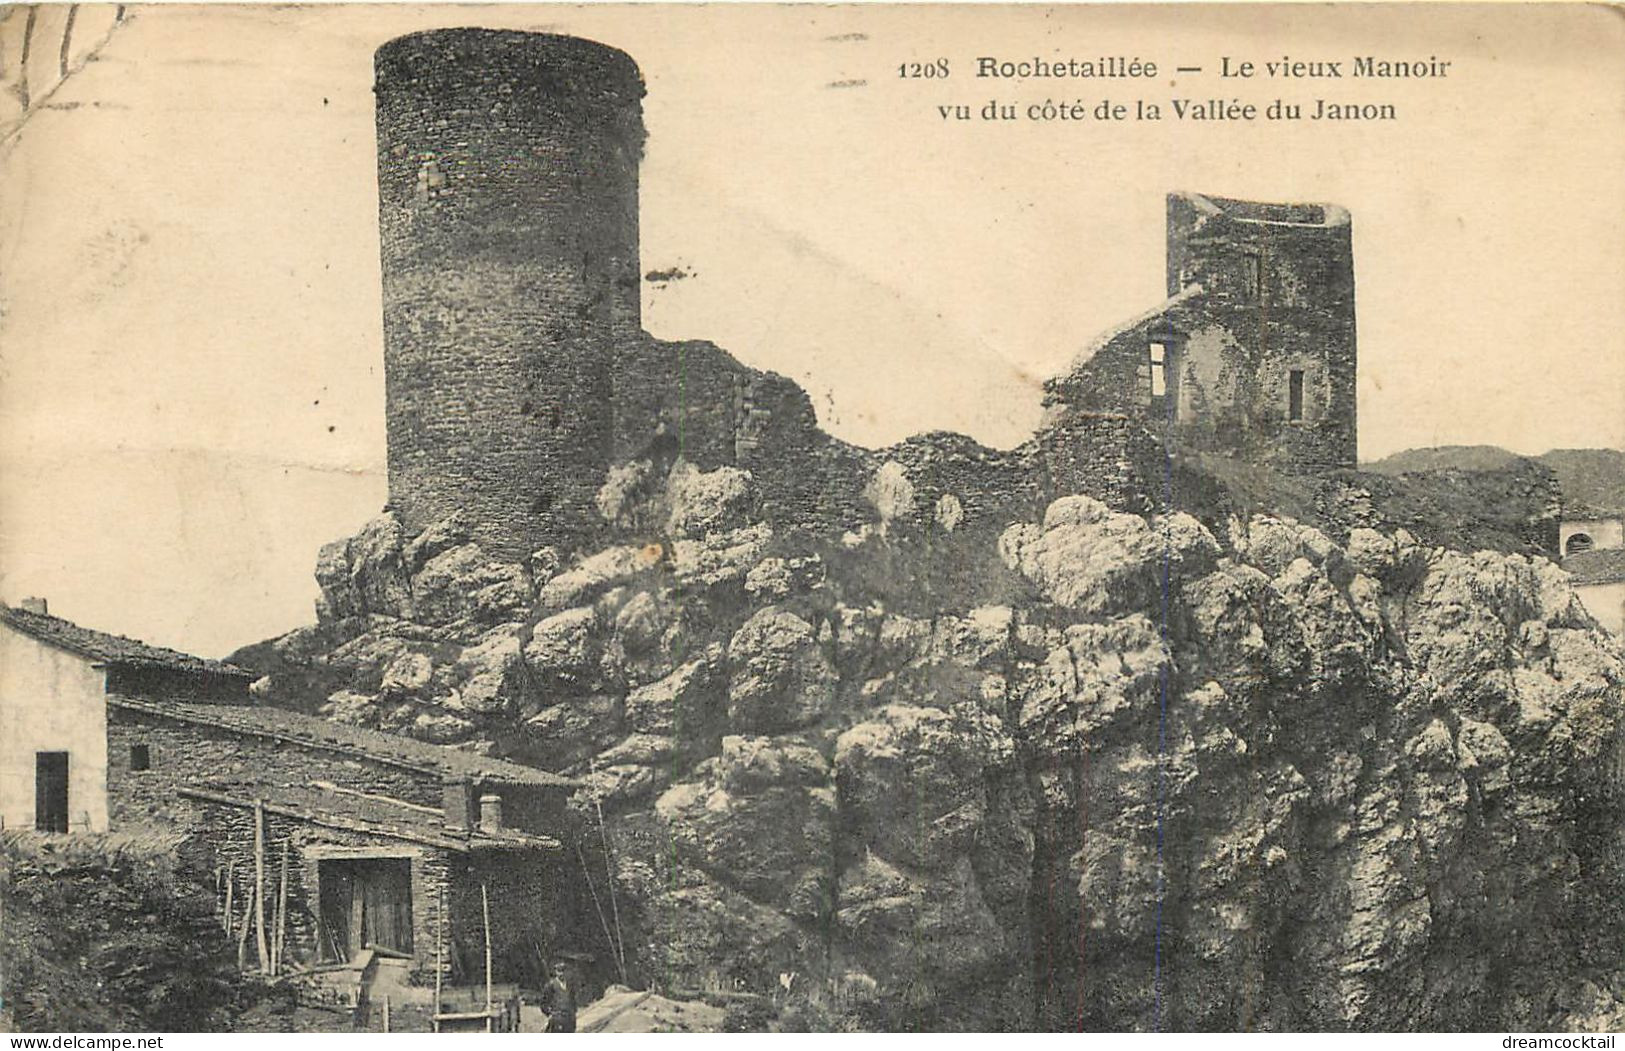 (S) Superbe LOT n°14 de 50 cartes postales anciennes sur toute la France